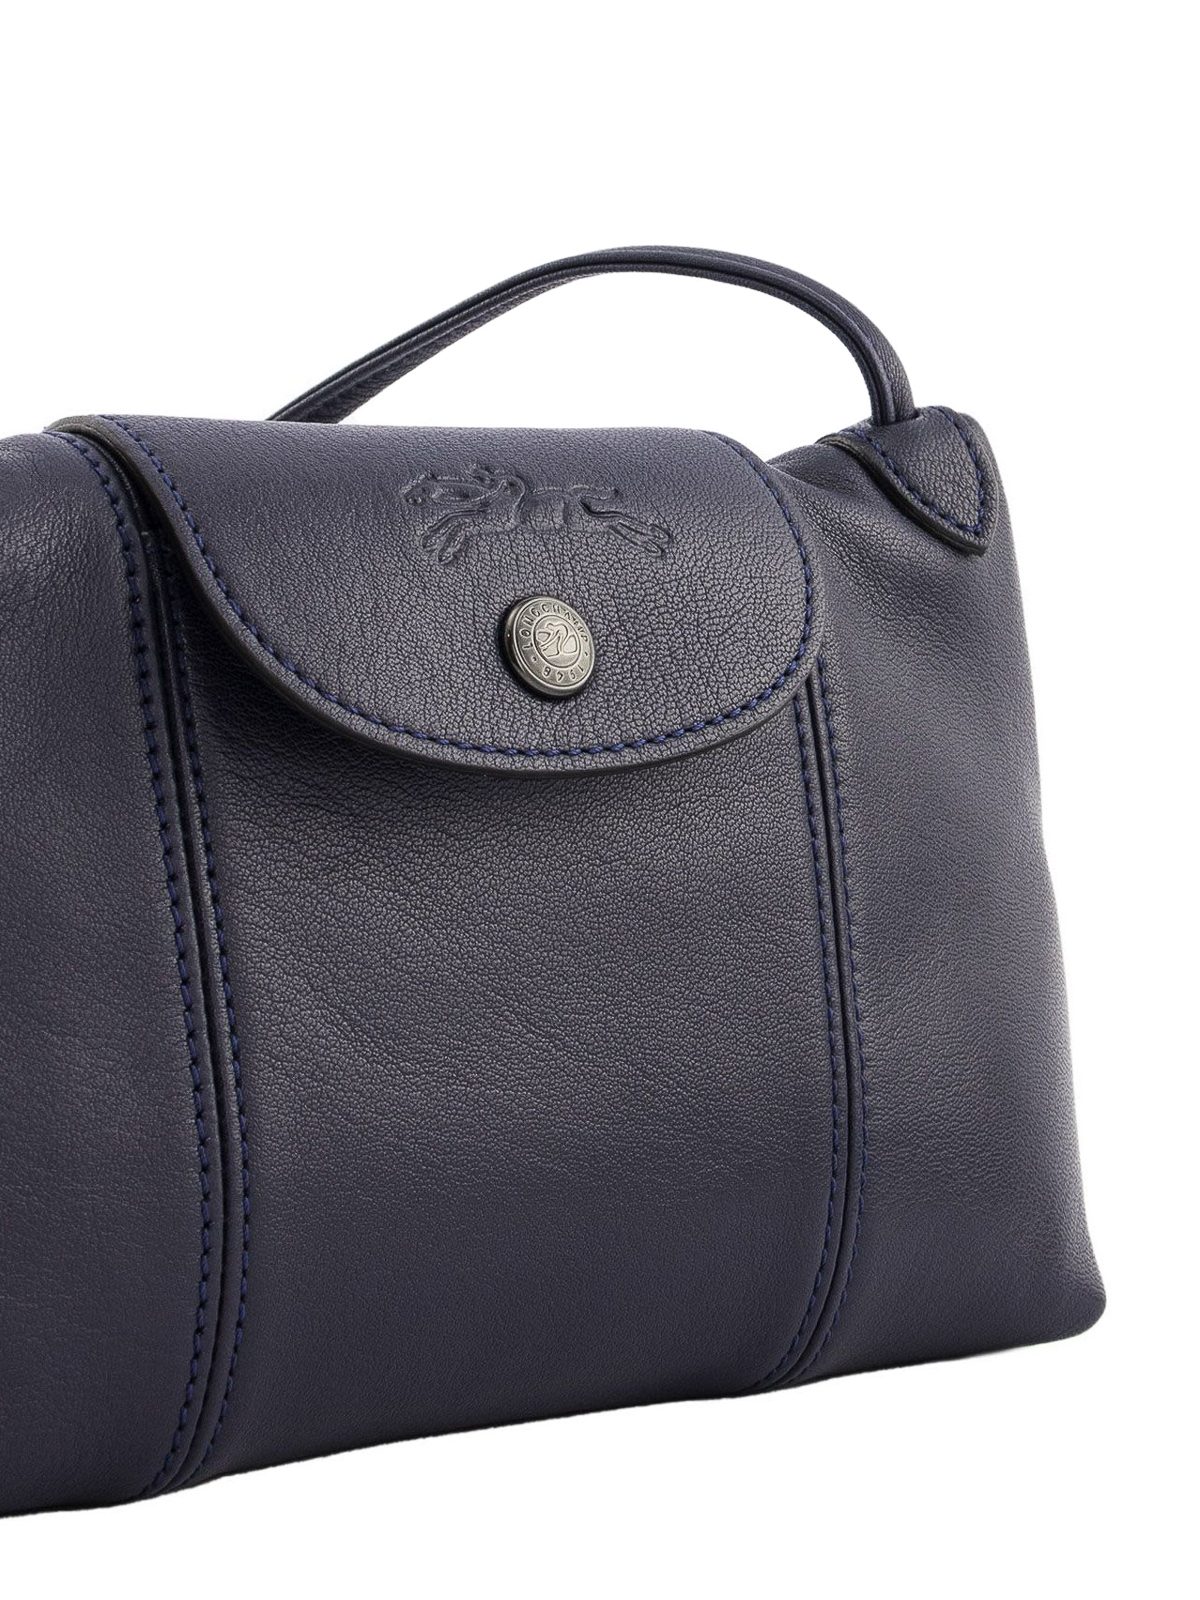 Longchamp Ladies Le Pliage Cuir Crossbody Bag L1061737556 3597921232285 -  Handbags - Jomashop